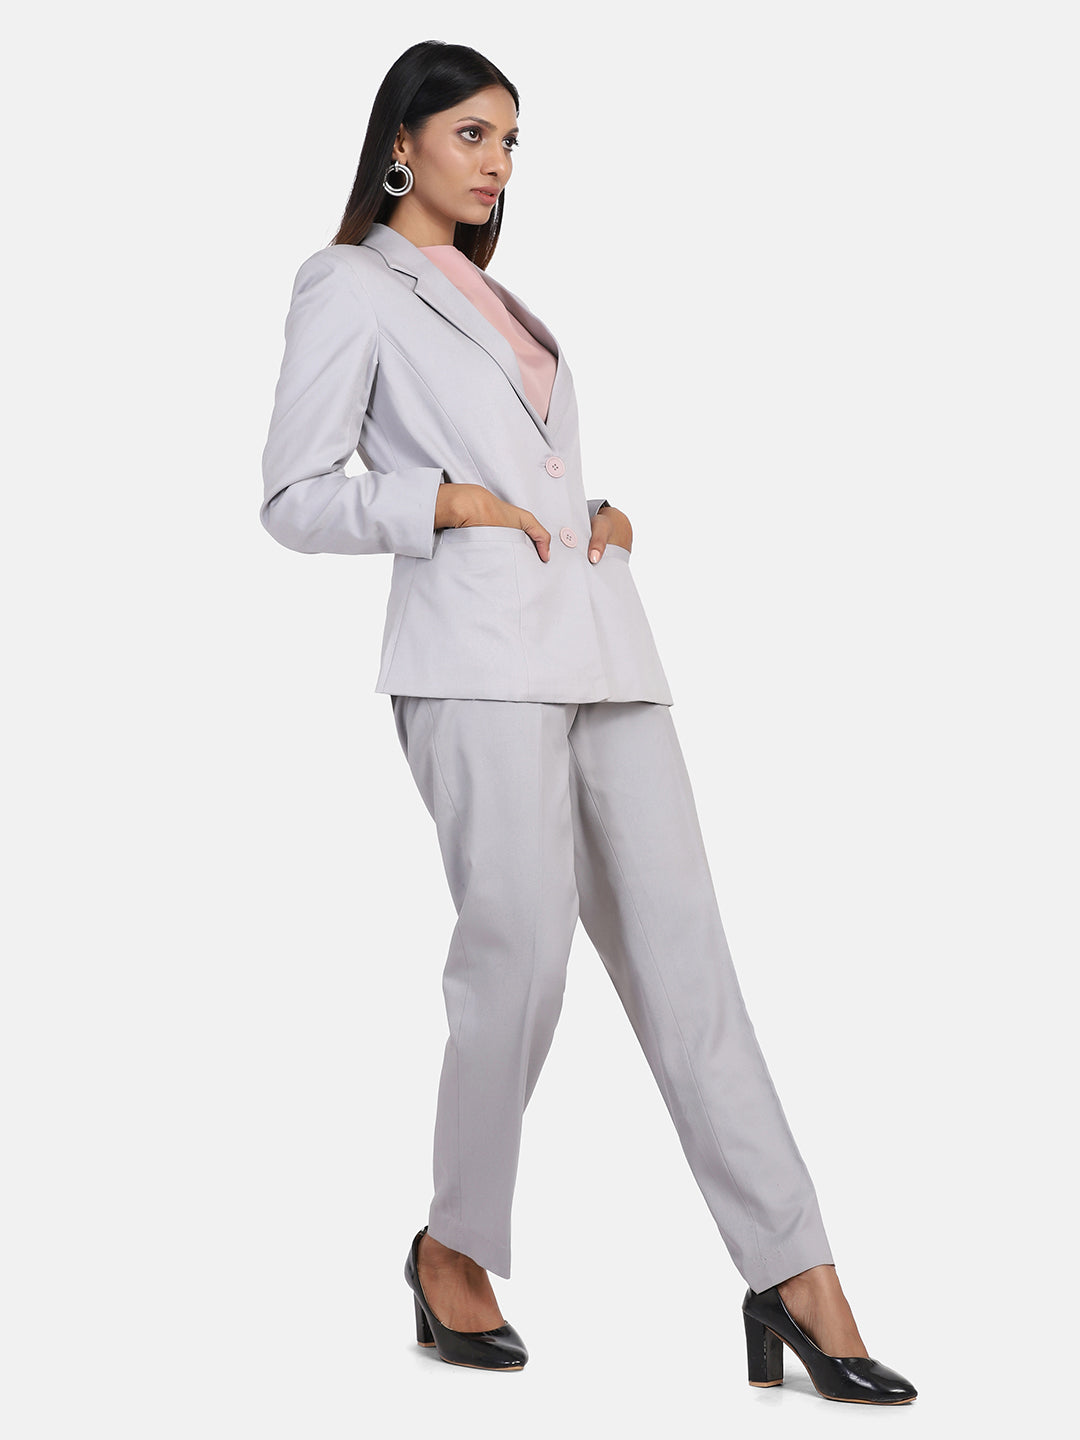 Grey Poly Cotton Pant & Suit